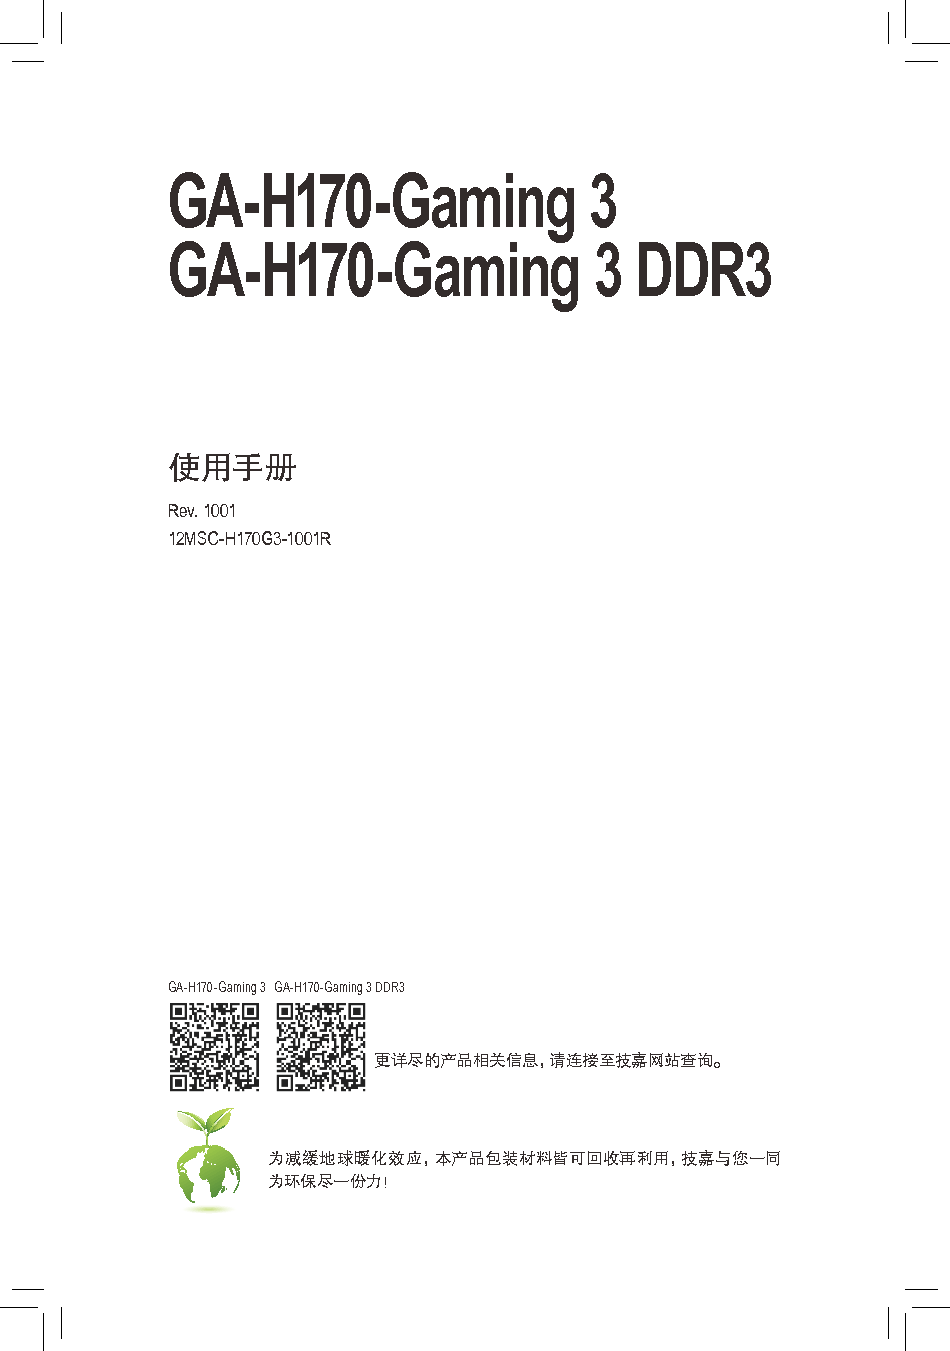 技嘉 Gigabyte GA-H170-Gaming 3 使用手册 封面